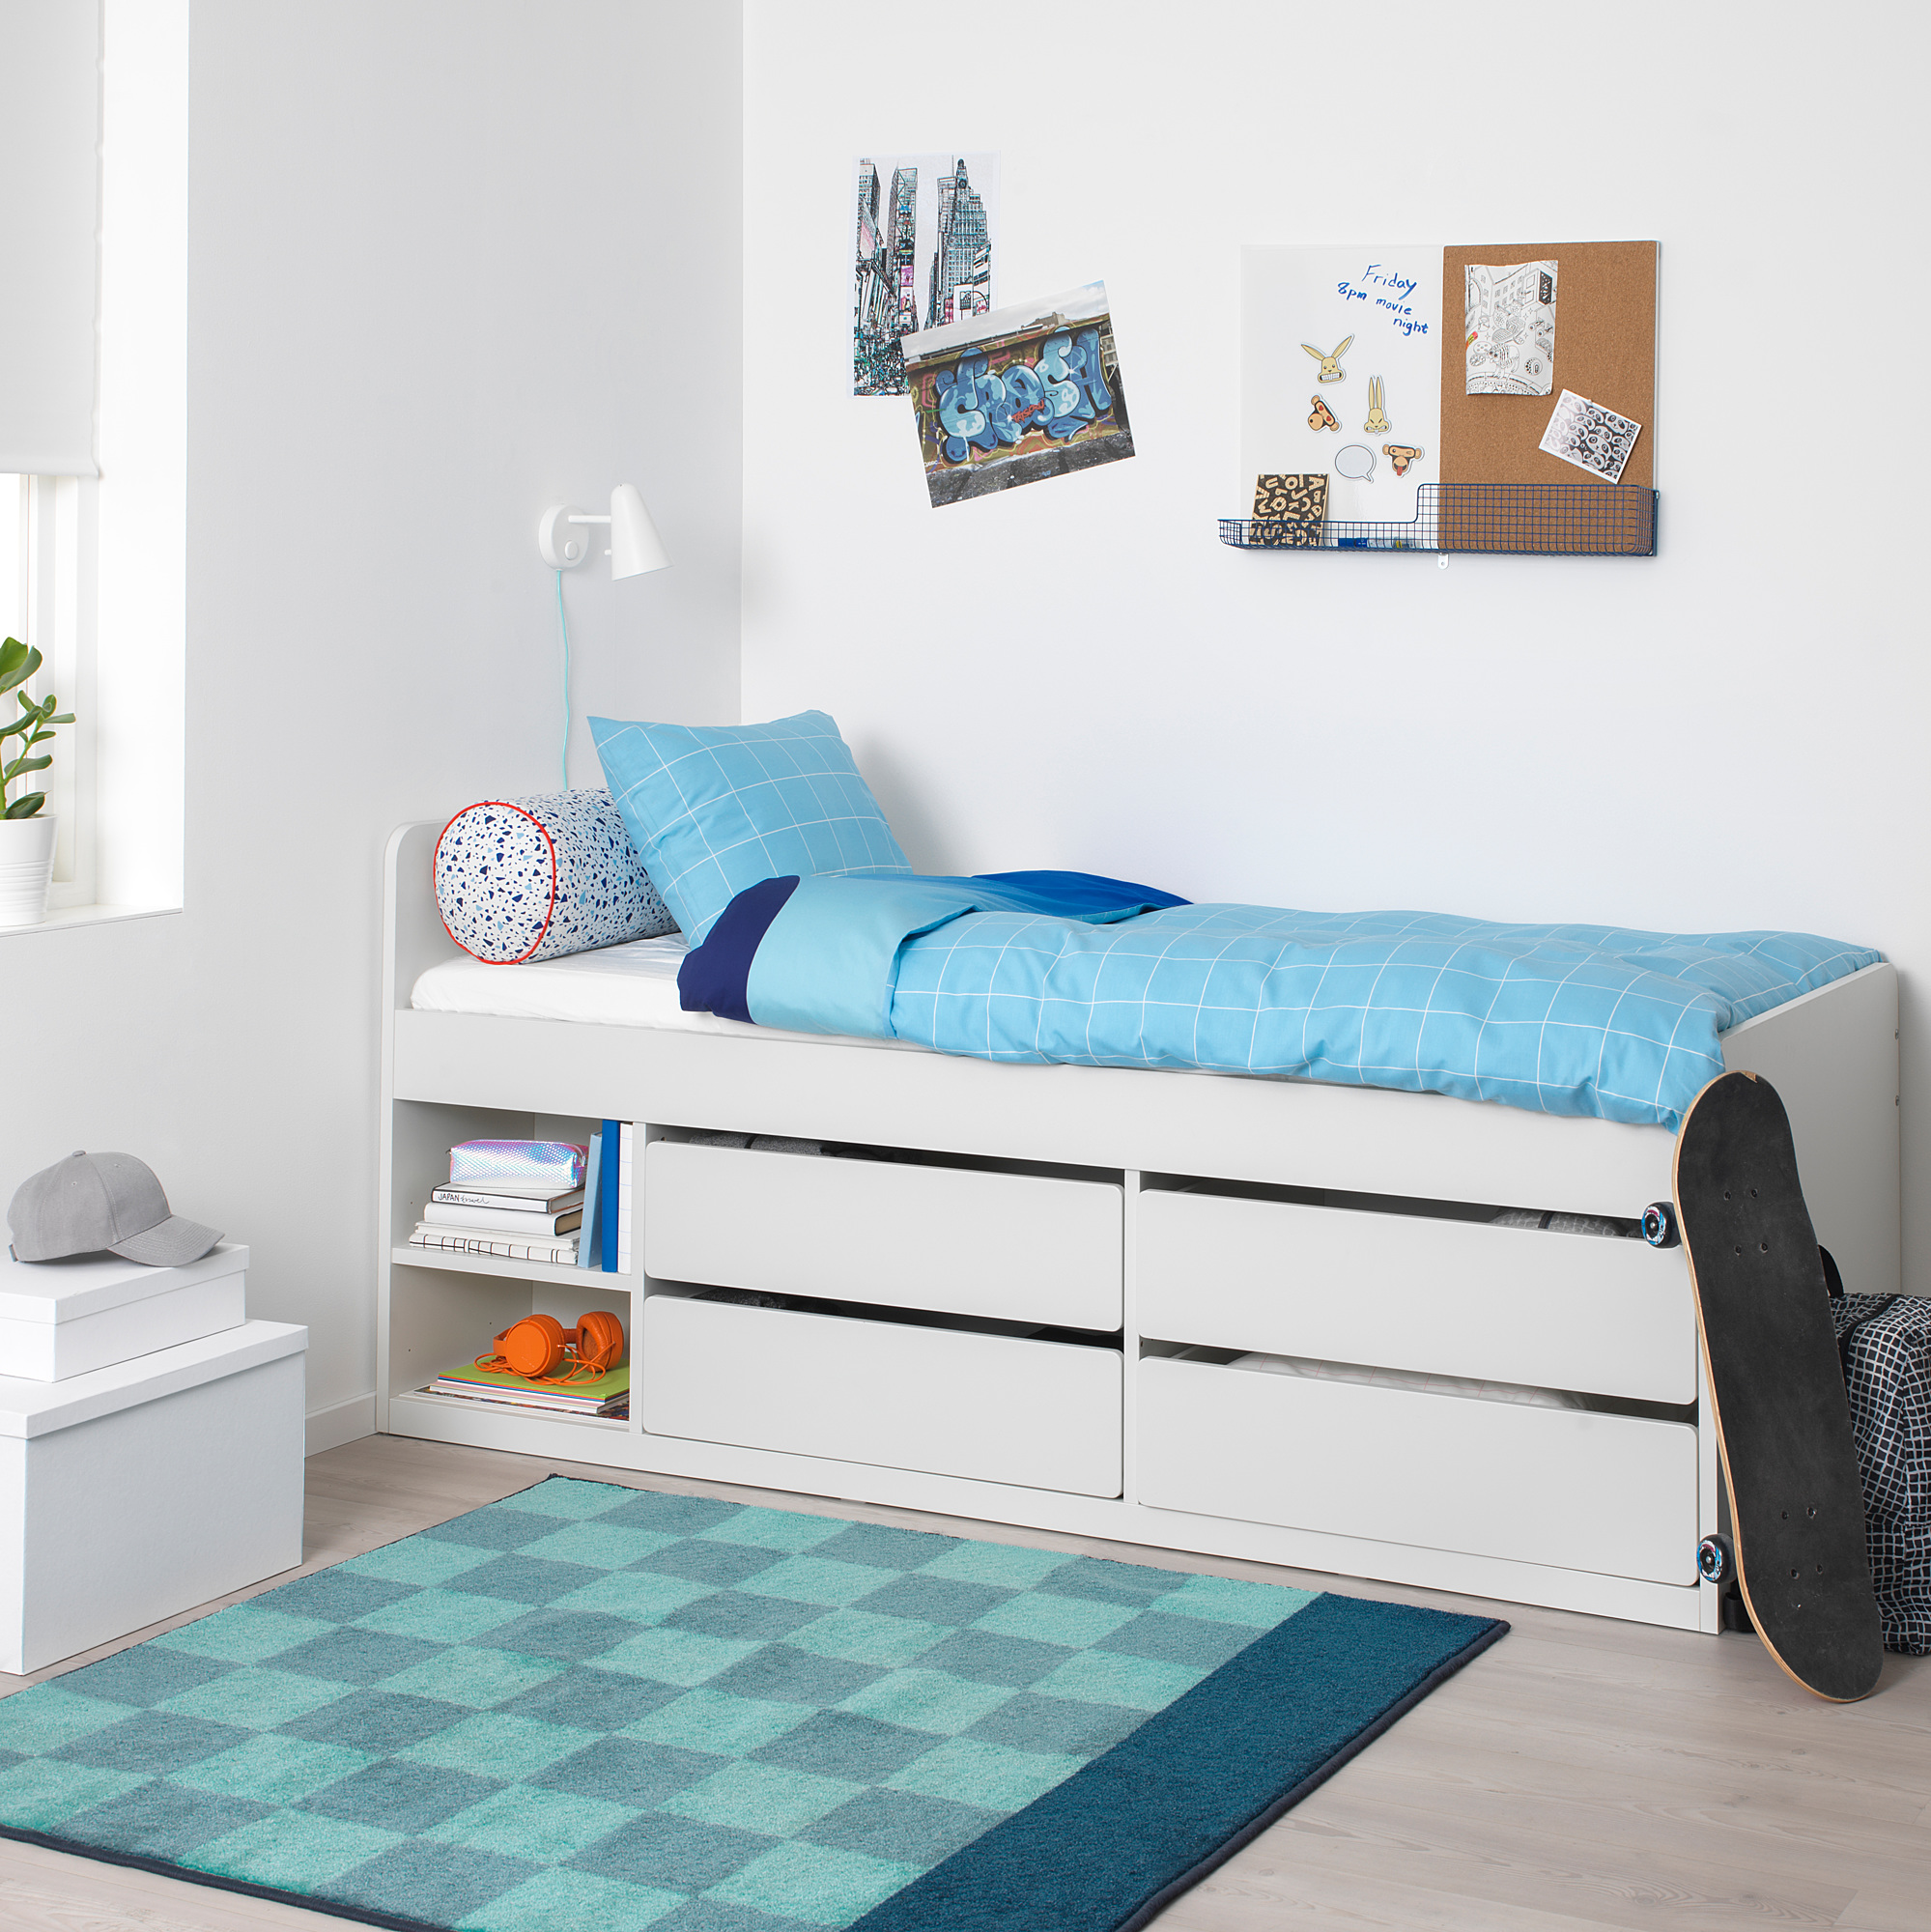 SLÄKT bed frame with storage